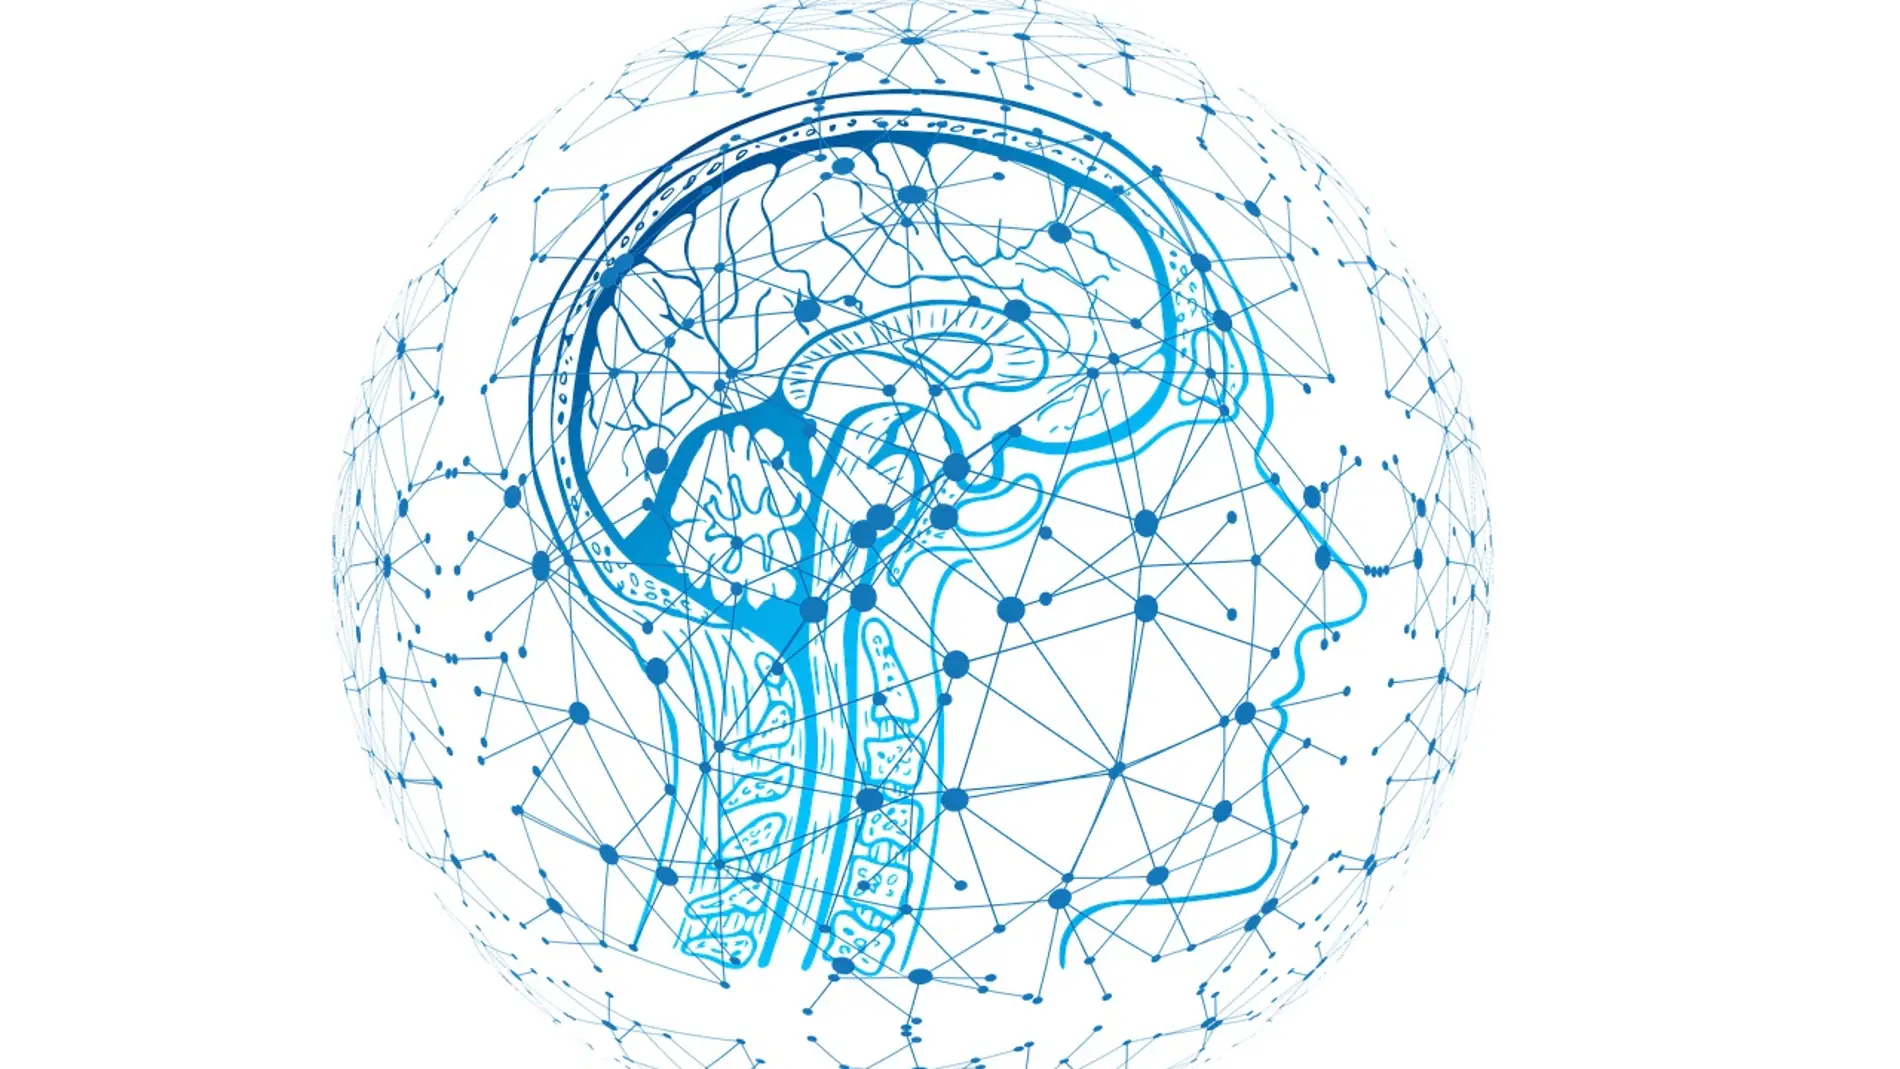 ilustración de una red neuronal en el cerebro